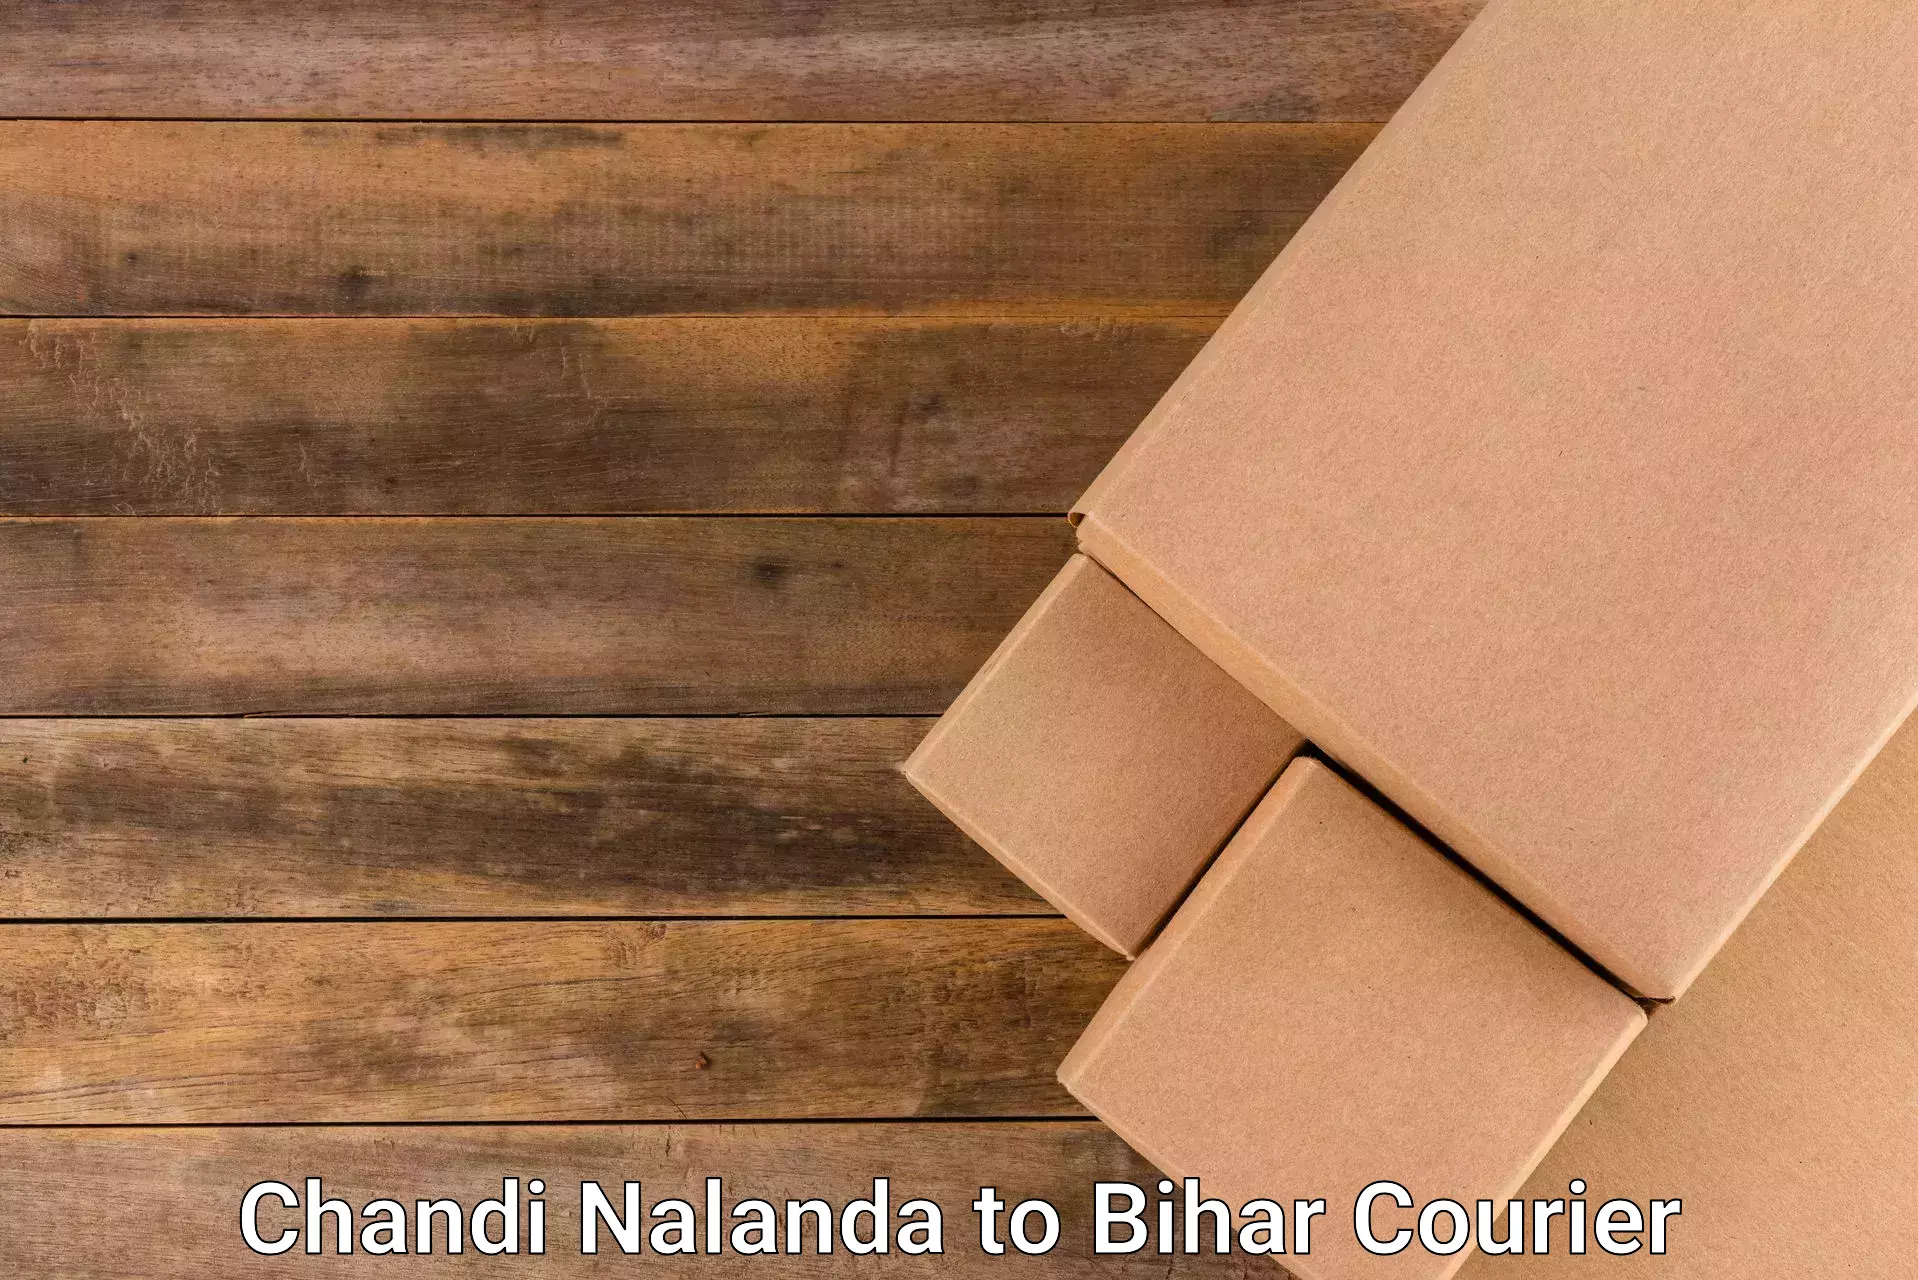 Fast shipping solutions in Chandi Nalanda to Bikramganj